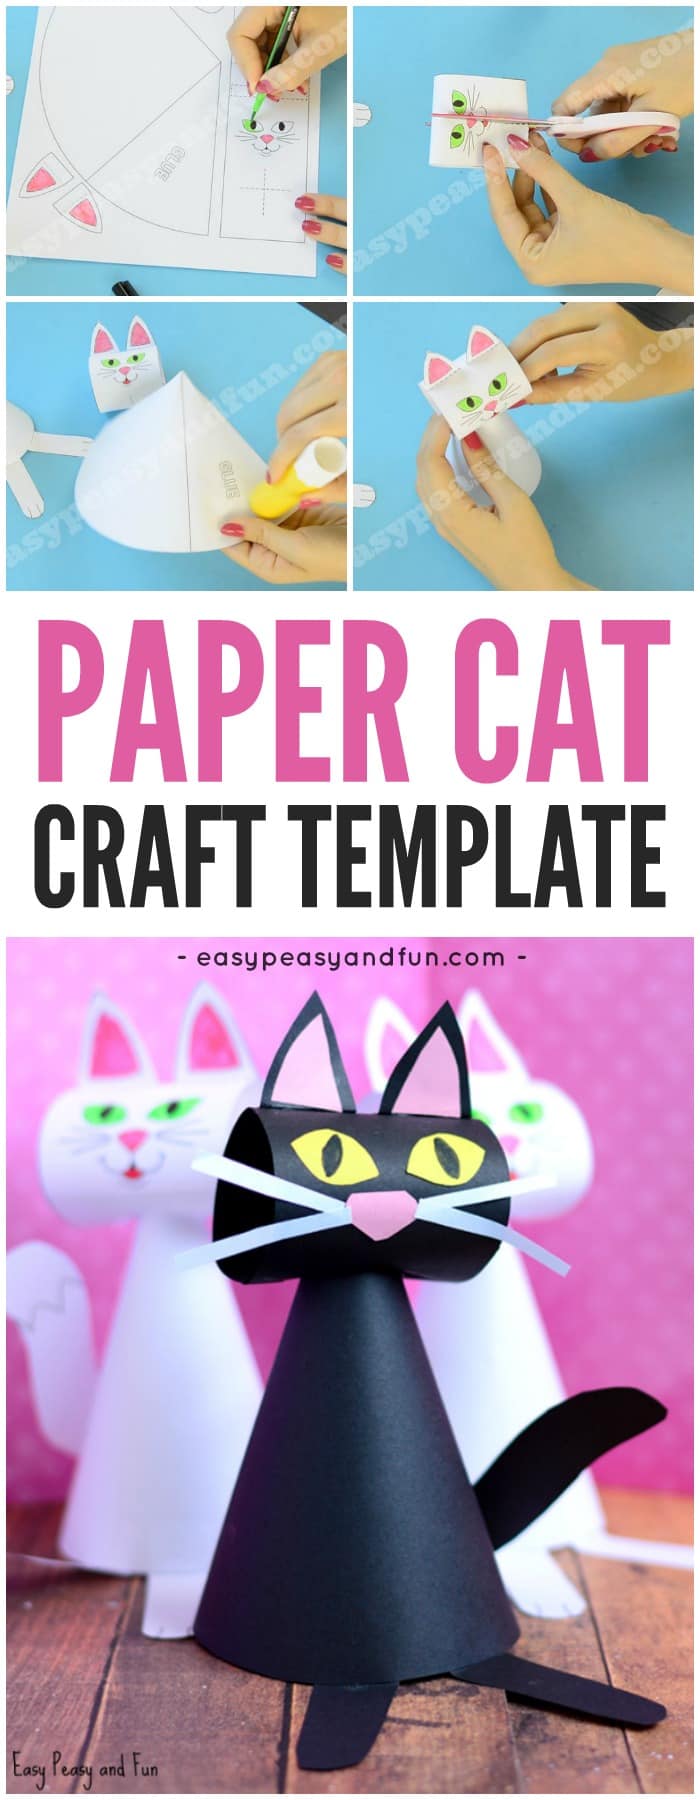 Cute Paper Cat Craft Template for Kids 